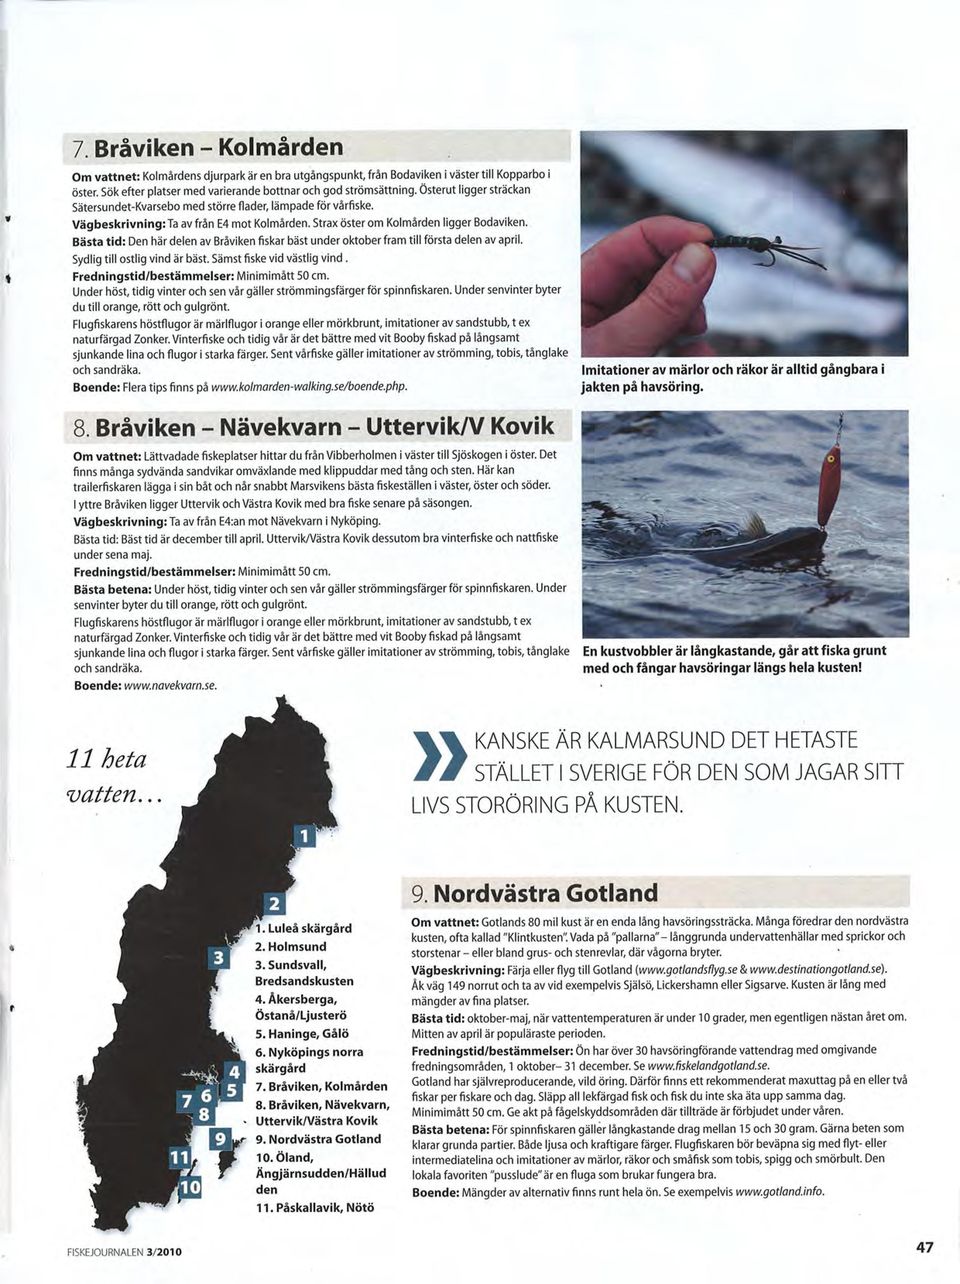 Bästa tid: Den här delen av Bråviken fiskar bäst under oktober fram till första delen av april. Sydlig till ostlig vind är bäst. Sämst fiske vid västlig vind.